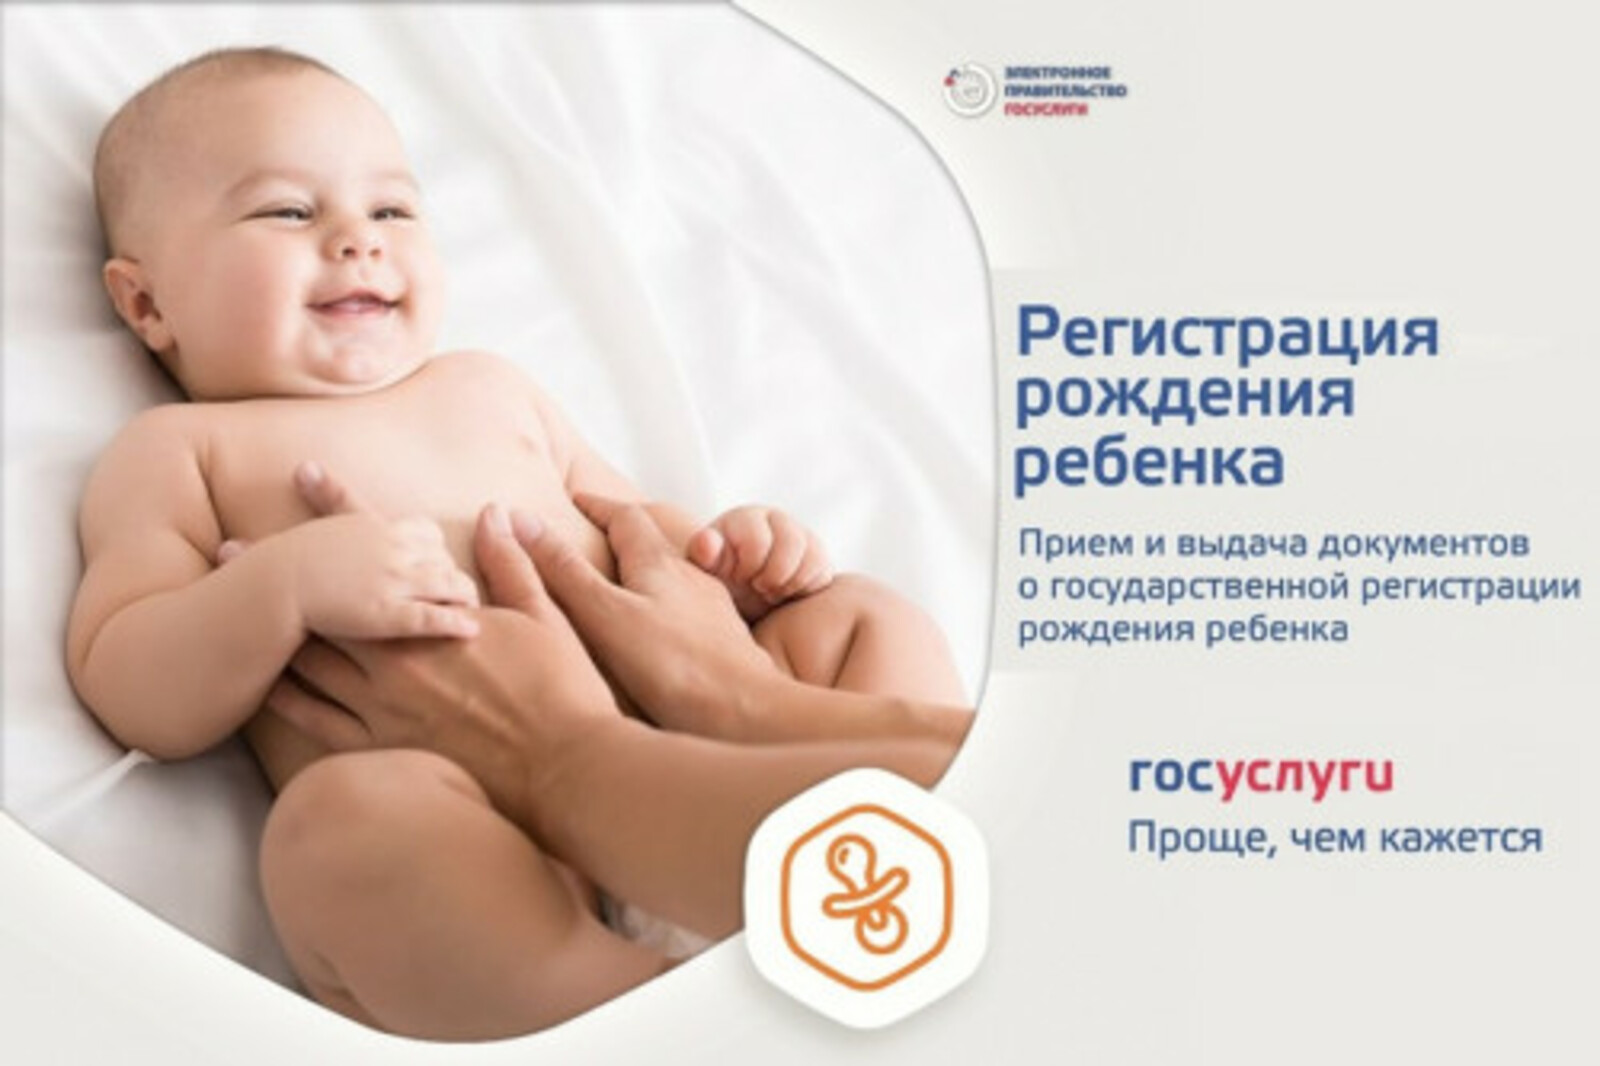 В Башкортостане в прошлом году суперсервисом «Рождение ребенка» воспользовались 19 655 человек